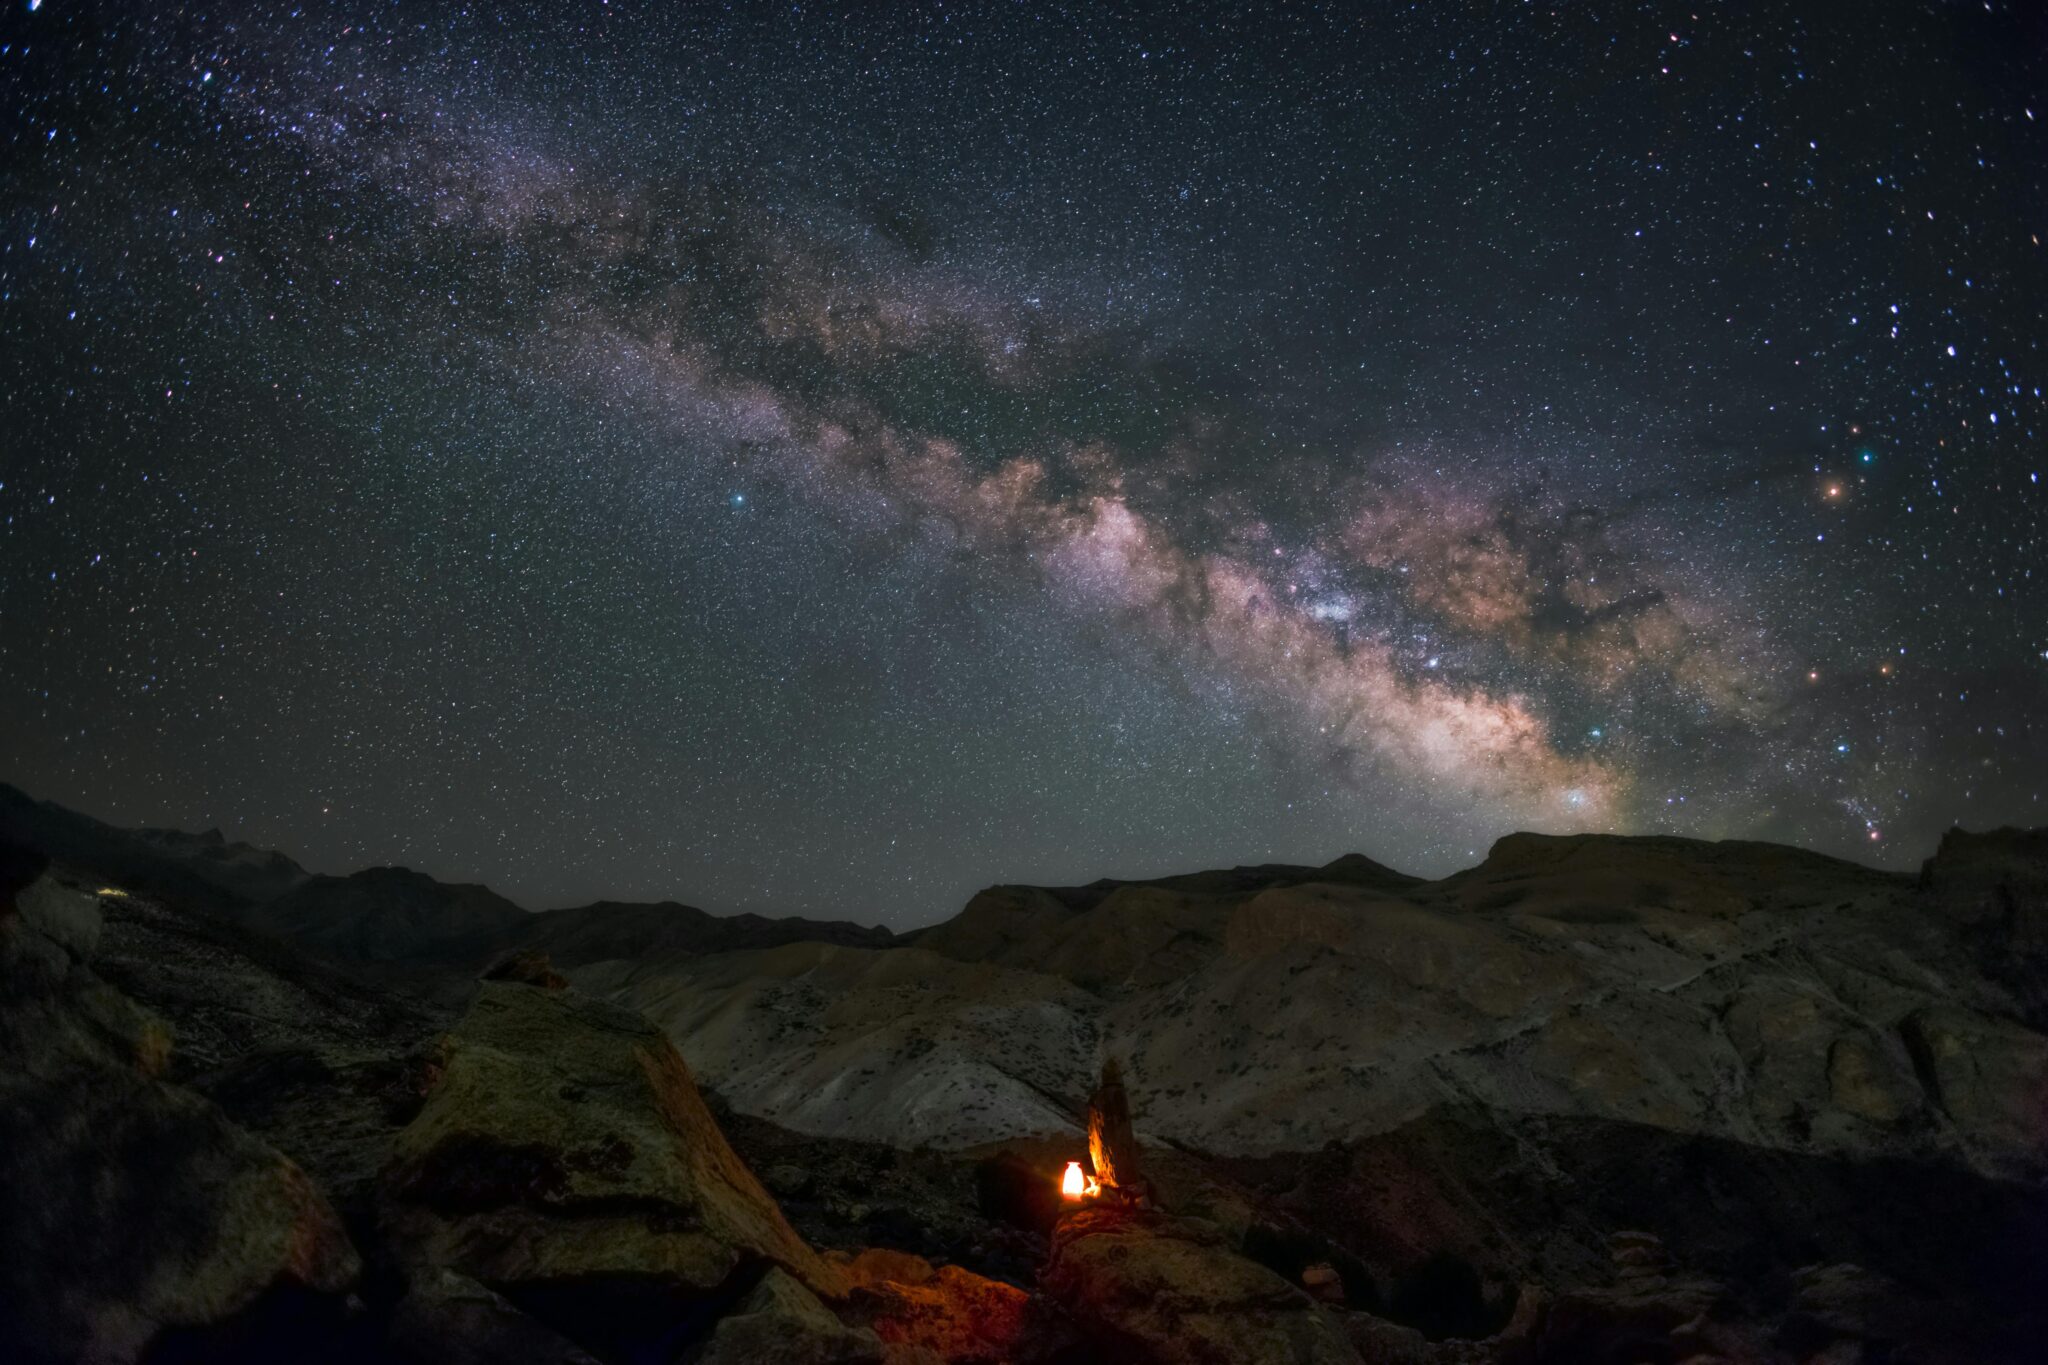 Ladakh starry skies